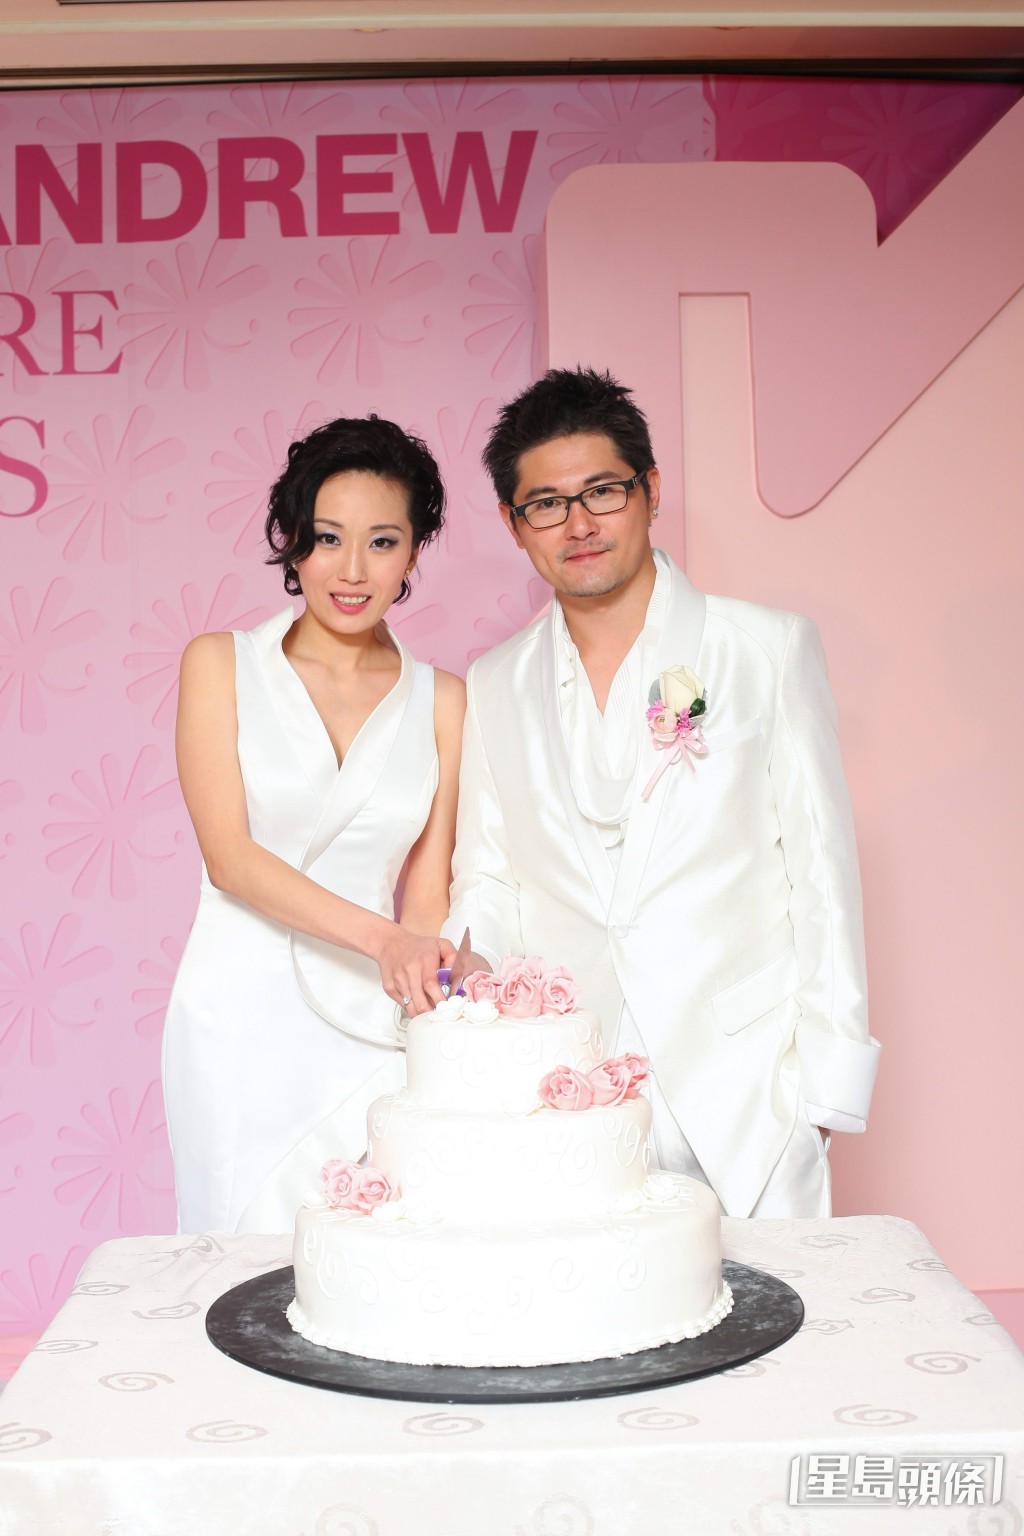 谷祖琳于于2010年与拍拖未够一年，从事香水代理生意，身家逾亿的澳洲大学同学刘颖恒闪婚。